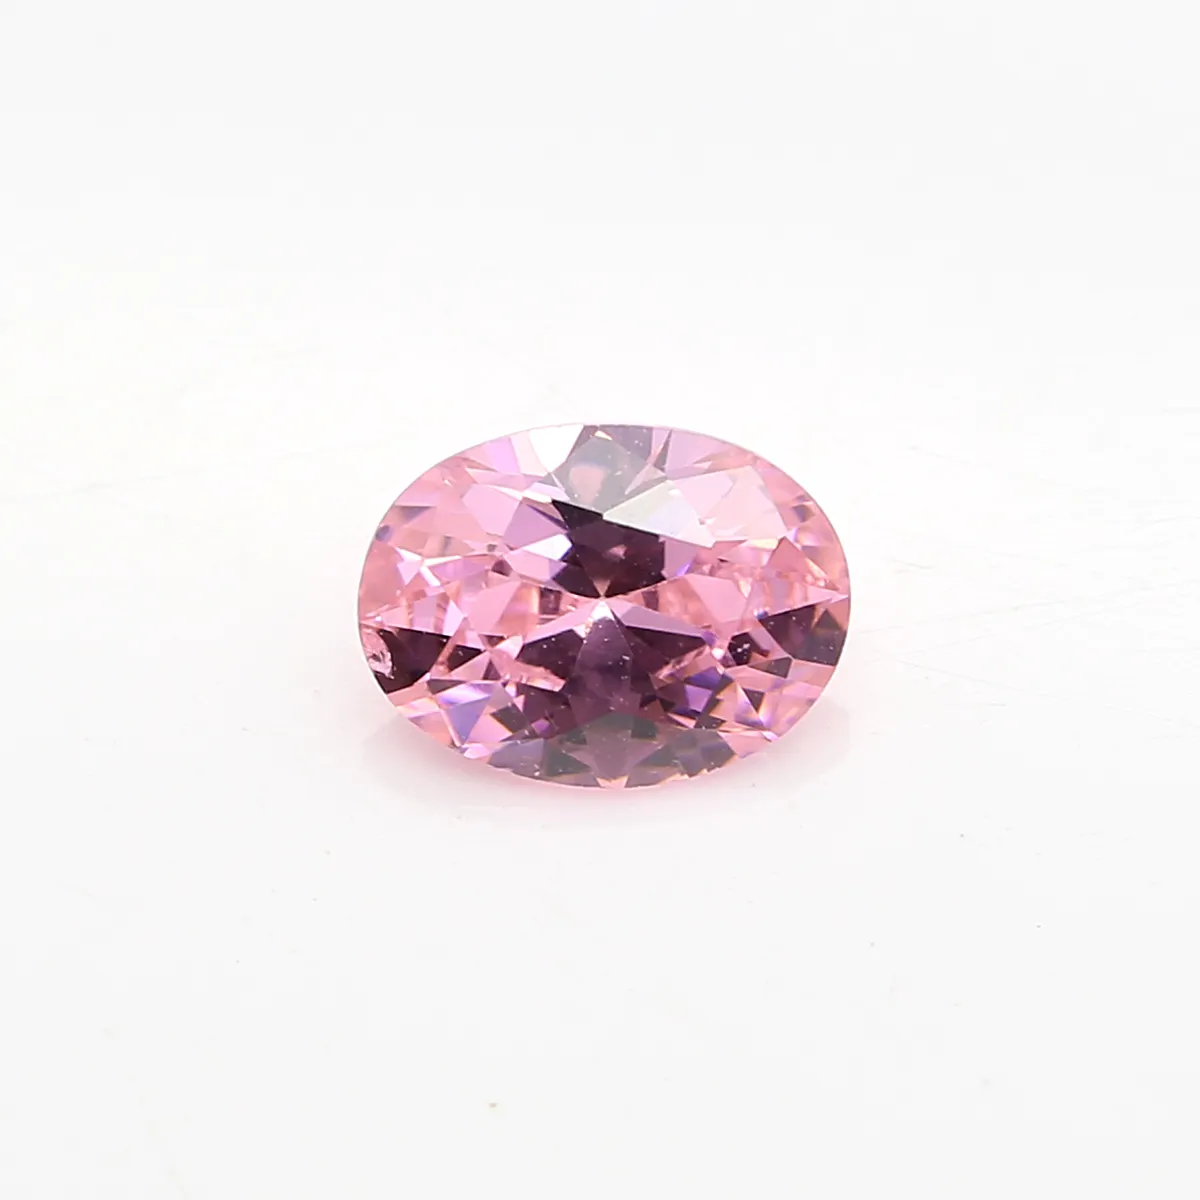 Alta qualidade cz diamante sintético oval forma rosa cz pedra